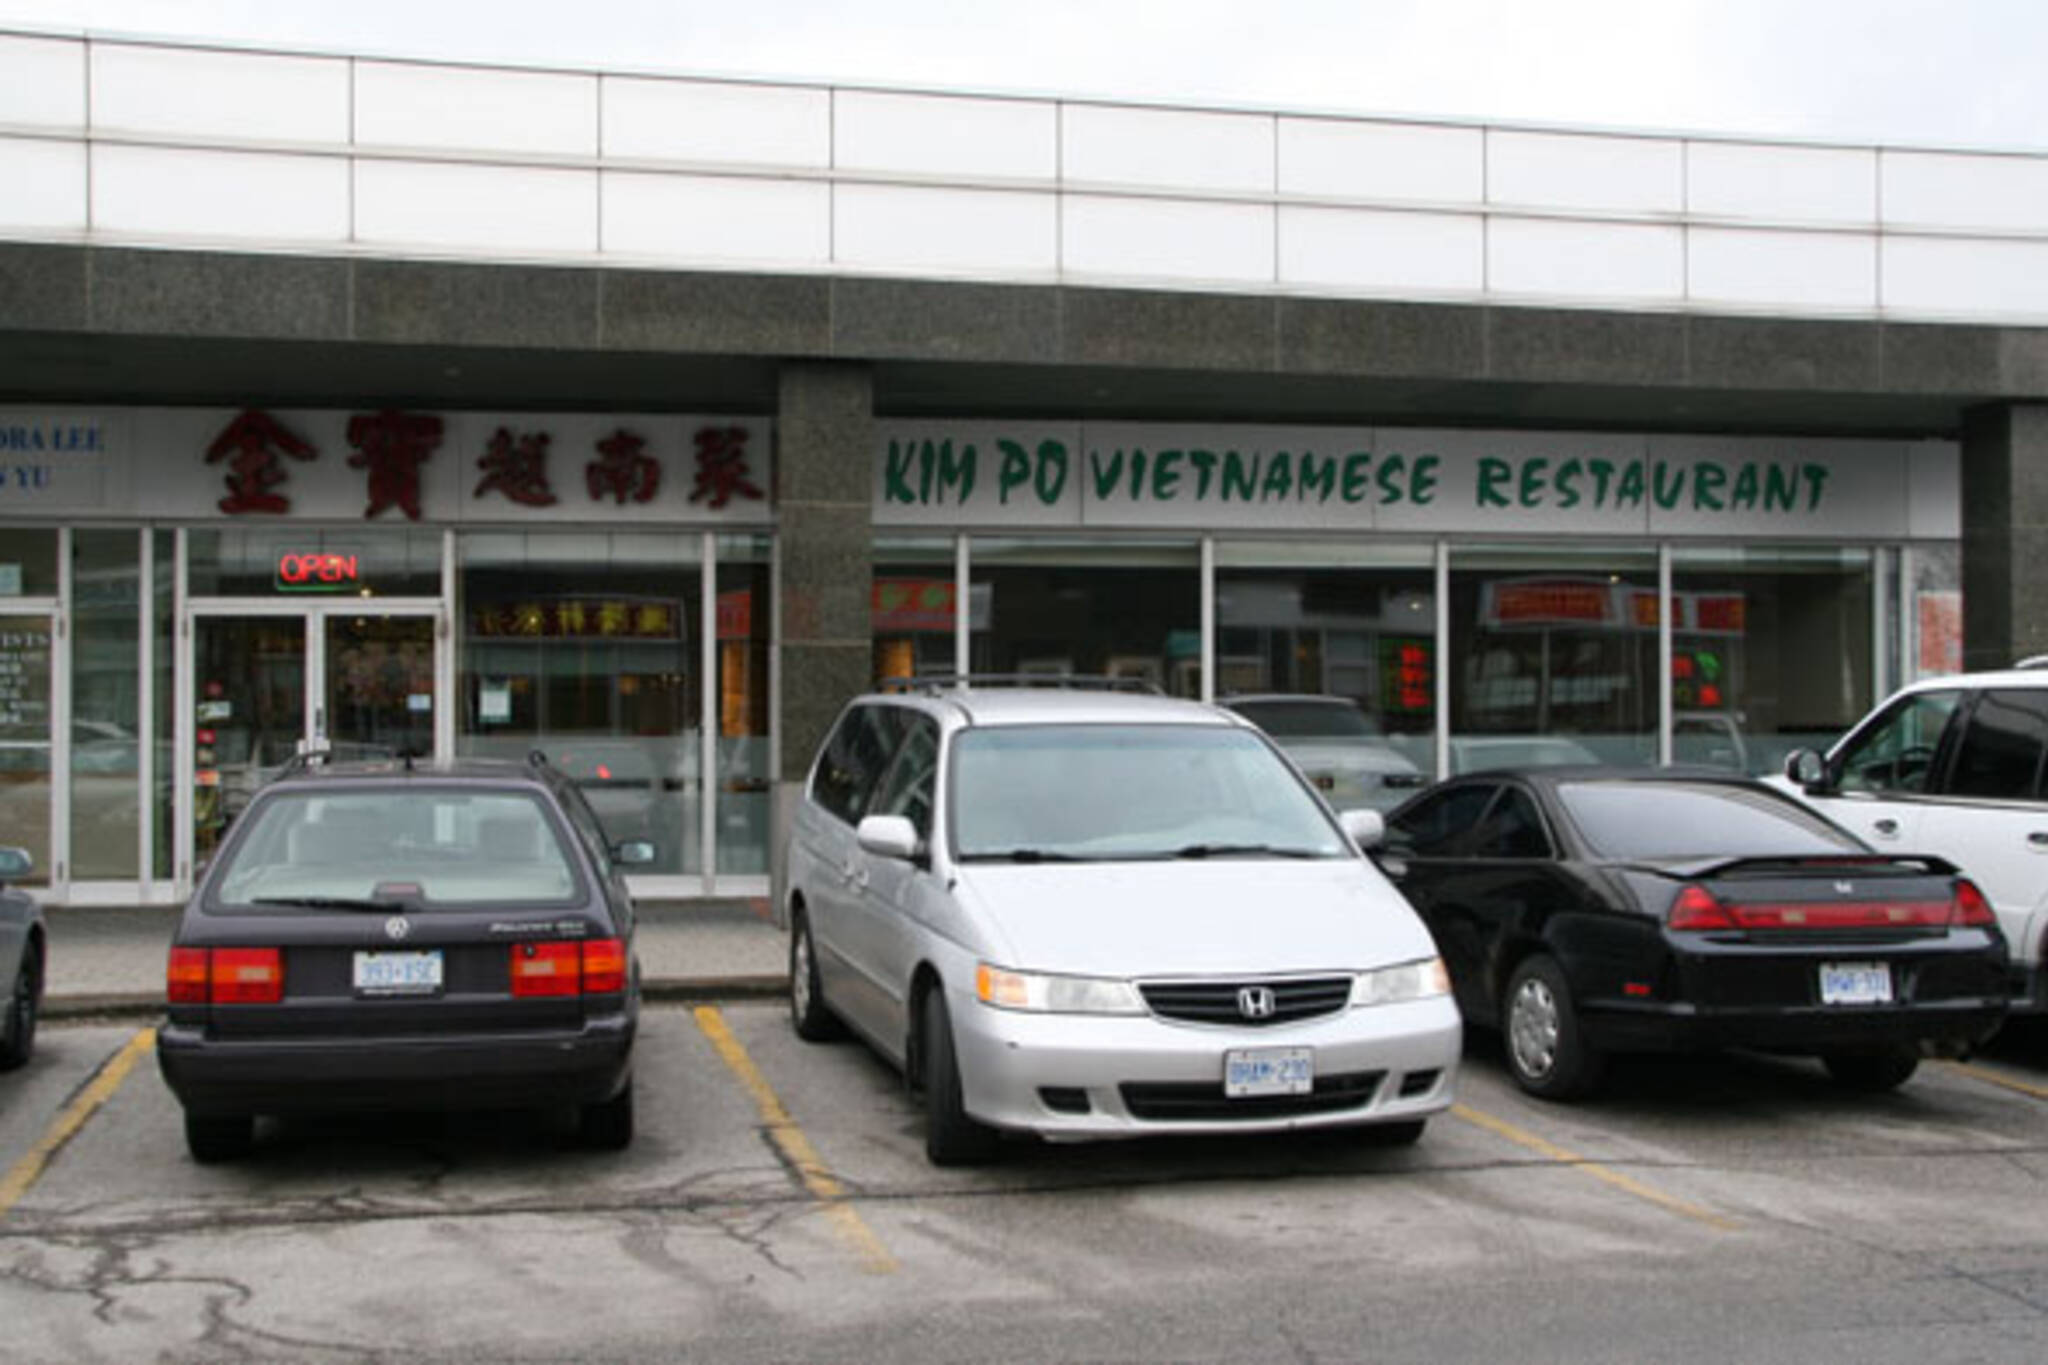 Kim Po Vietnamese Restaurant Richmond Hill